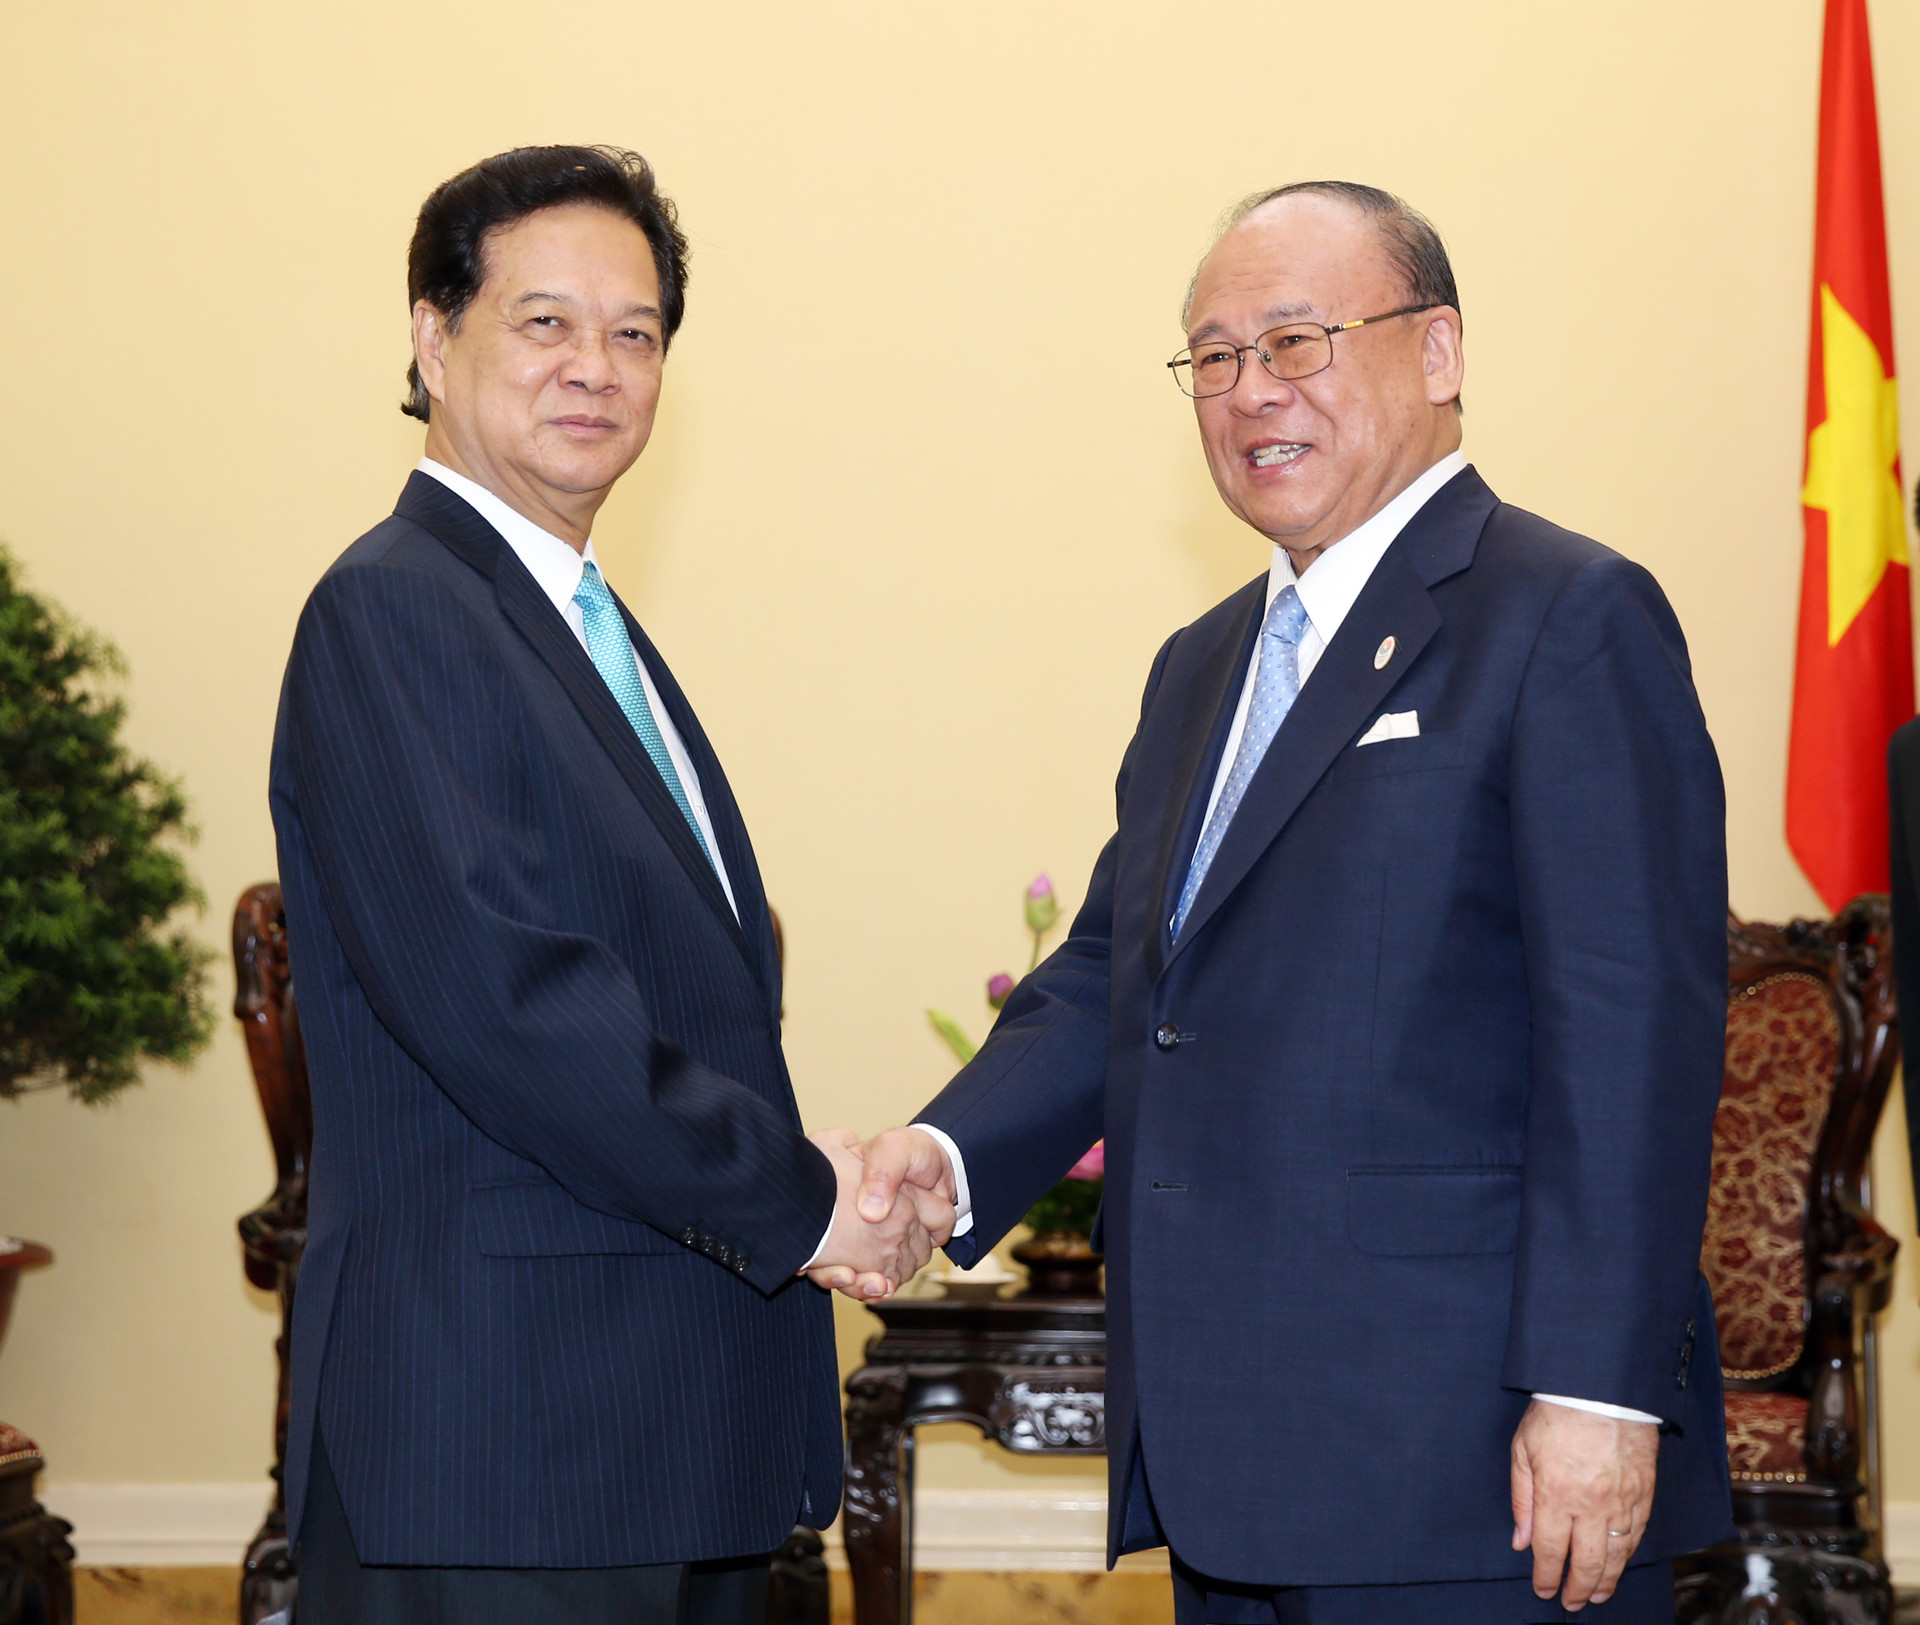 Thủ tướng tiếp cố vấn đặc biệt Liên minh nghị sĩ hữu nghị Nhật - Việt